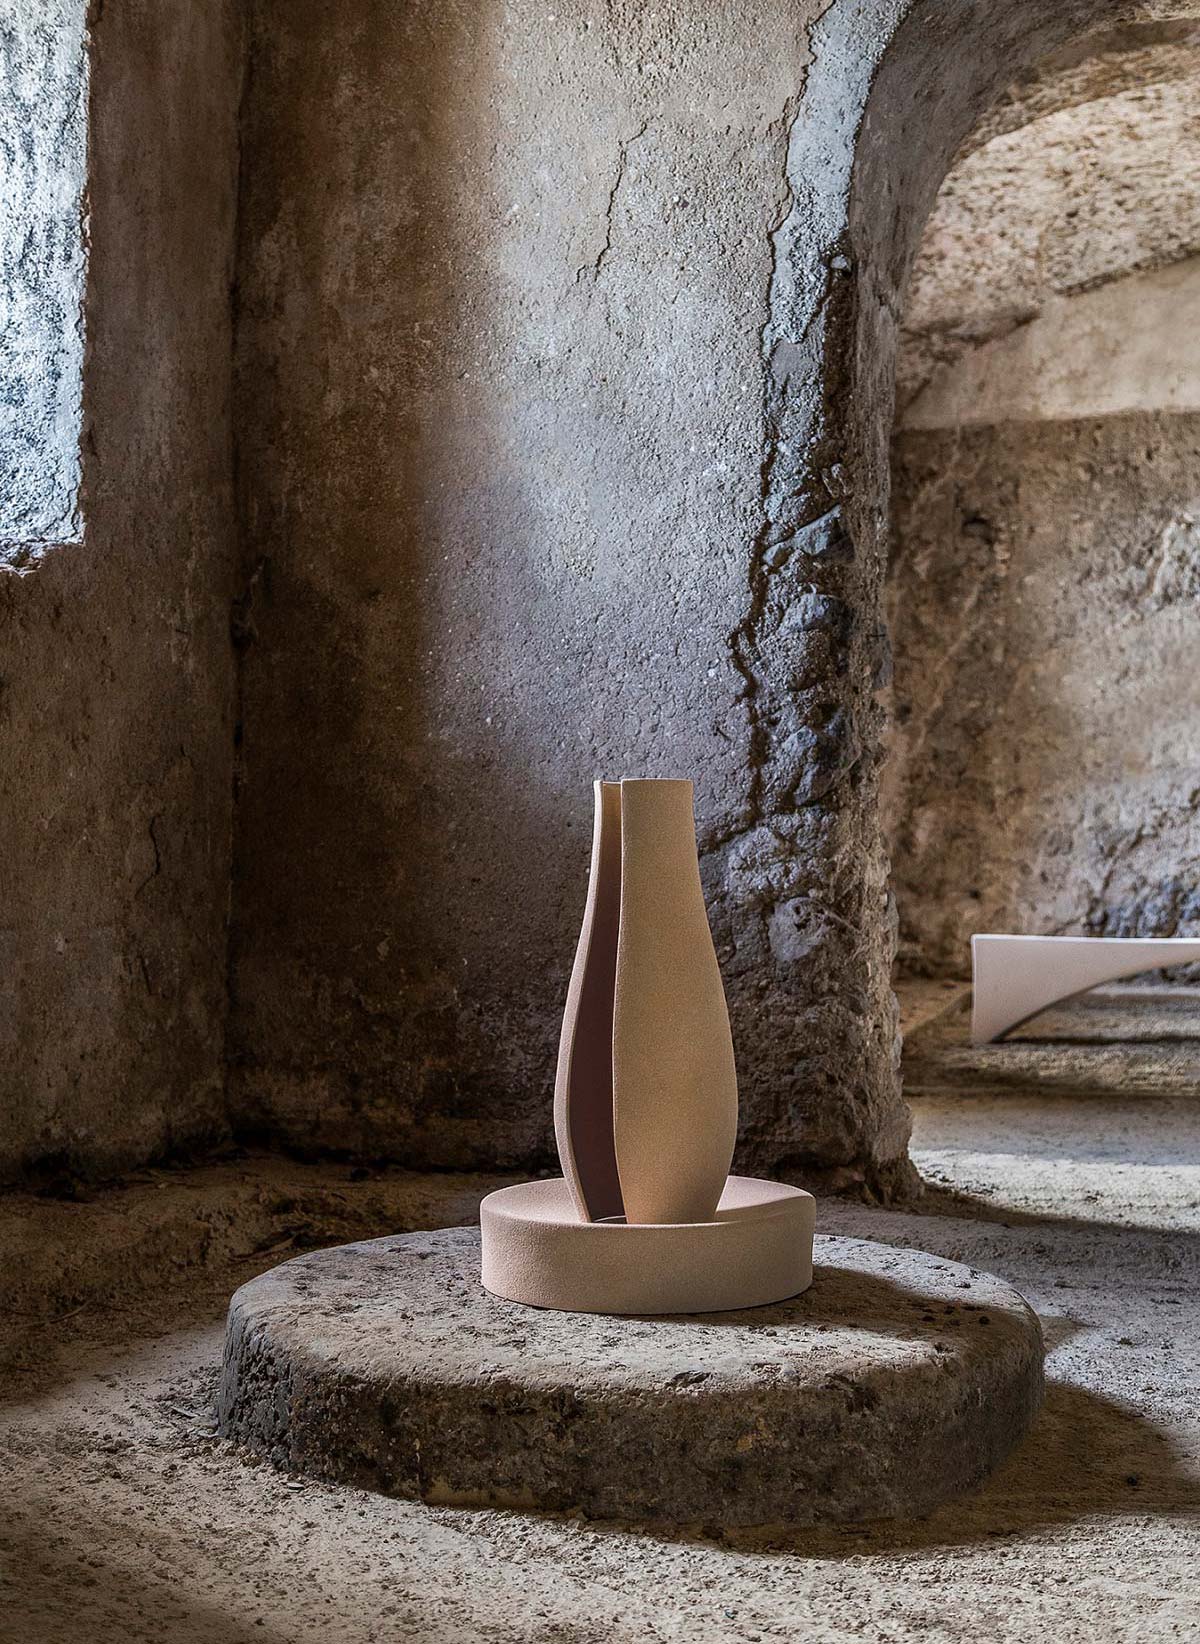 Proporzione Mediterranea Vase II by Architetti Artigiani Anonimi - Photo © Omar Golli